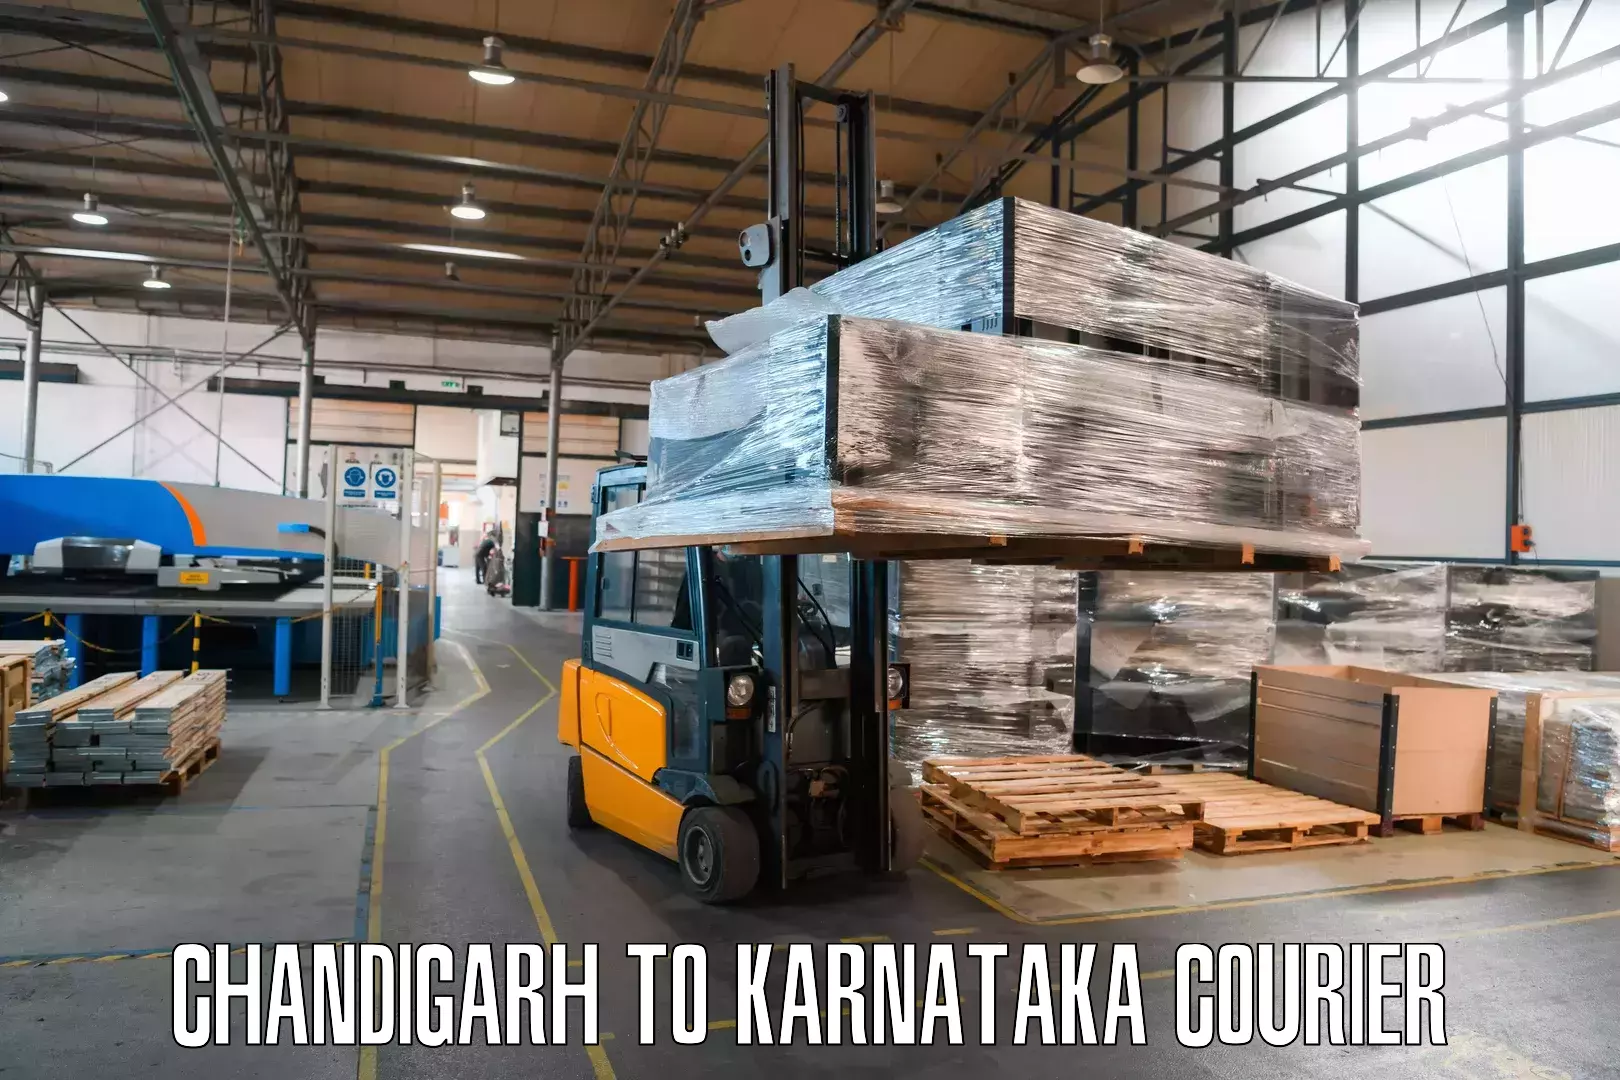 Courier service comparison Chandigarh to Karnataka